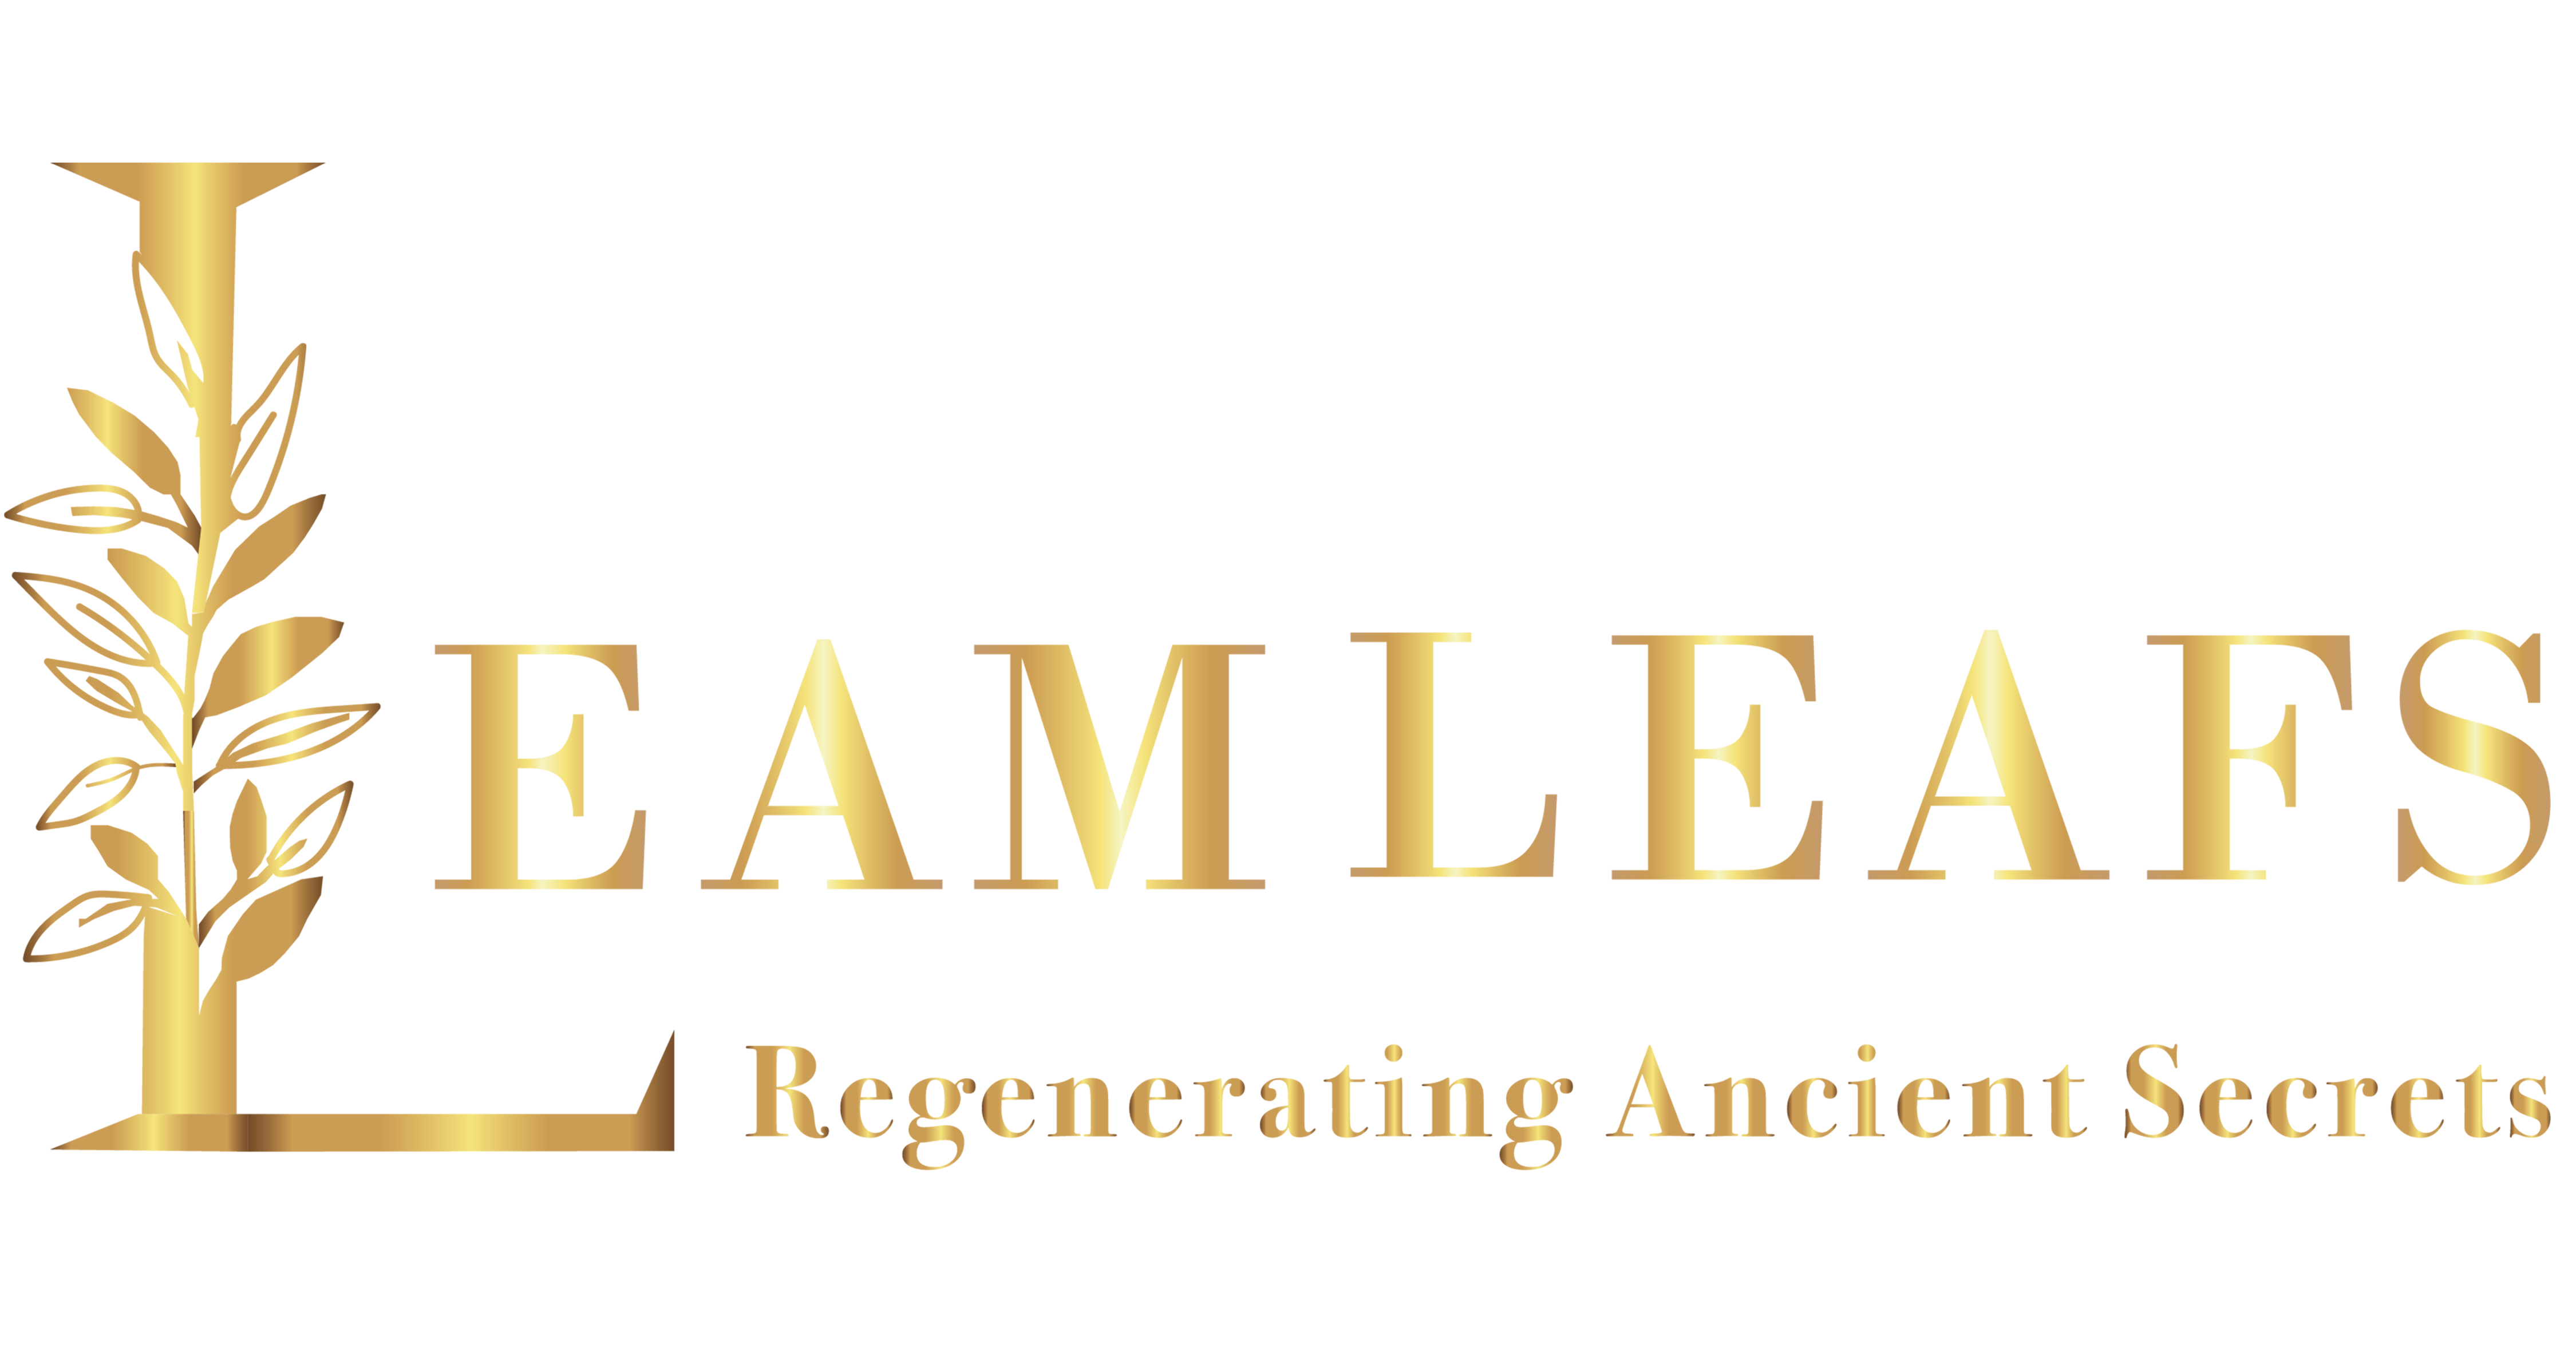 Leamleafs Skincare